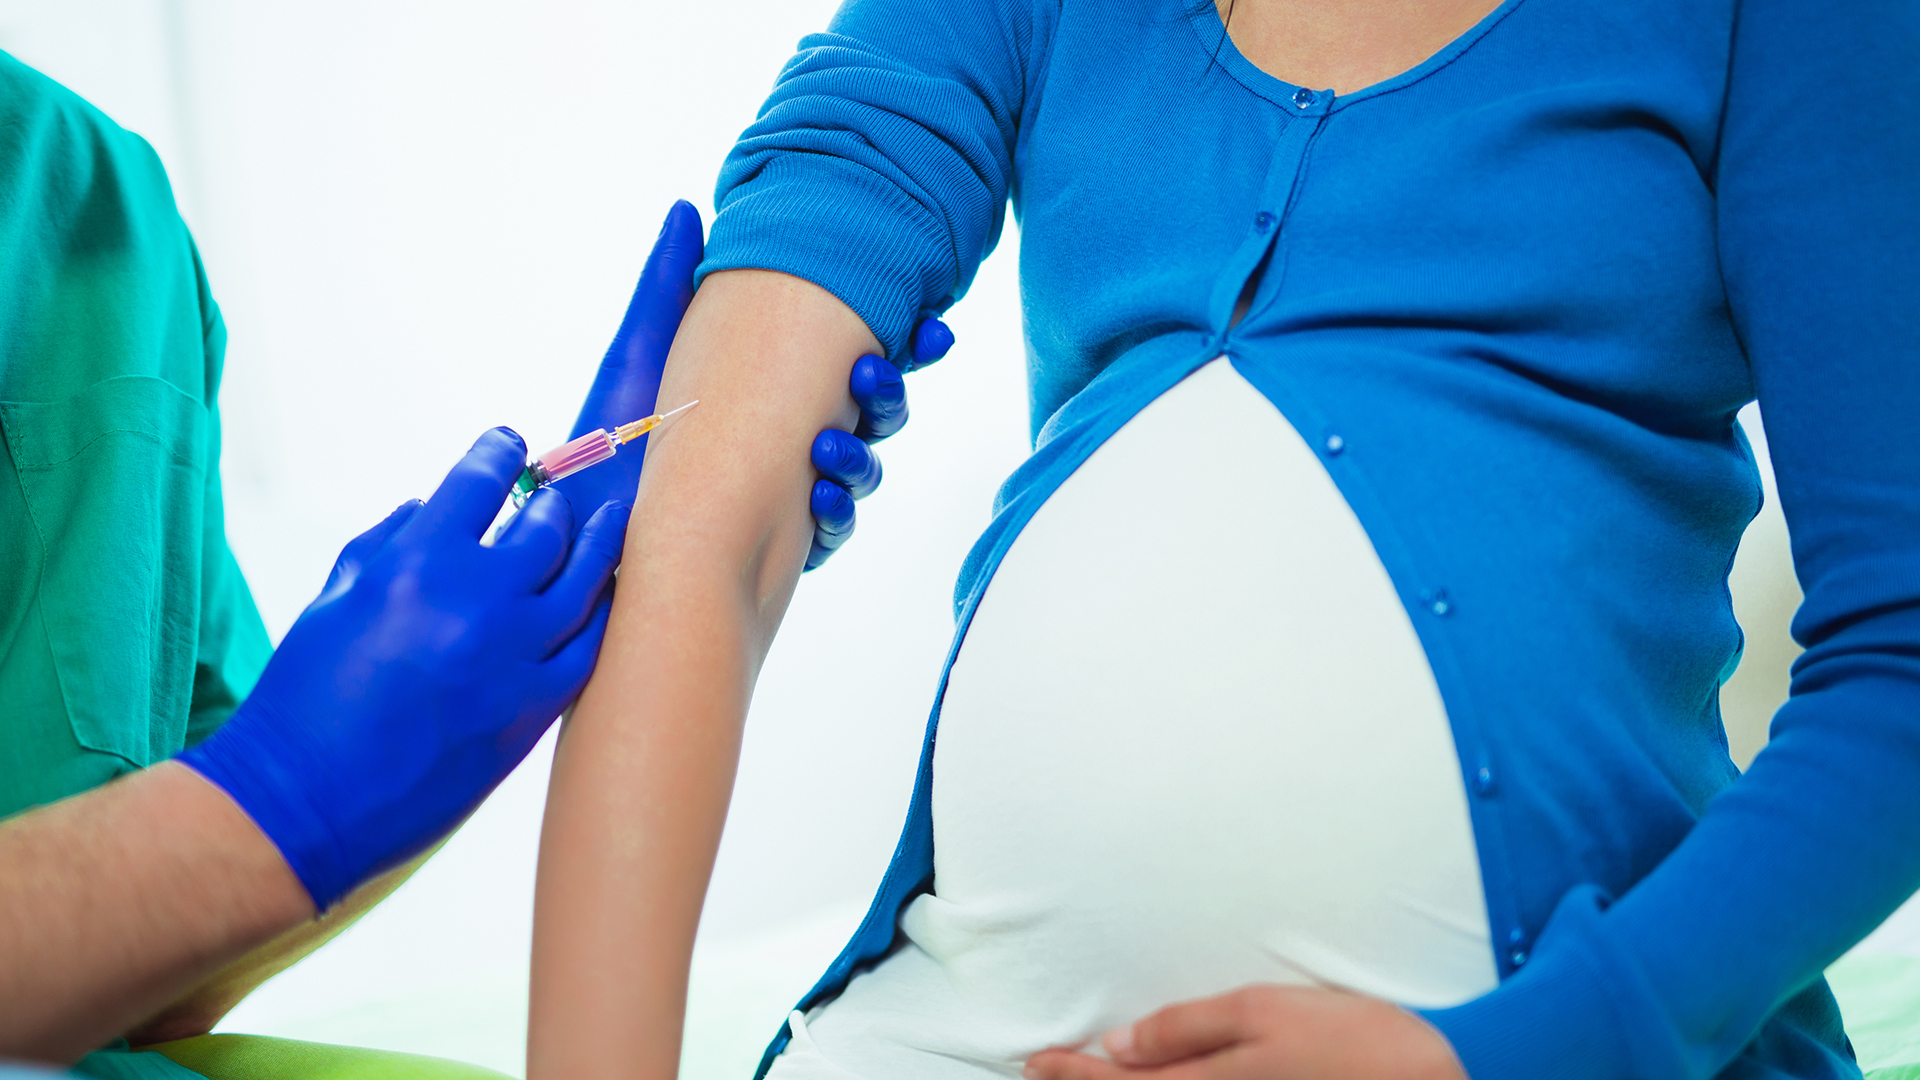 تقرير مفصل حول درجة أمان لقاح كورونا بالنسبة للنساء الحوامل والمرضعات